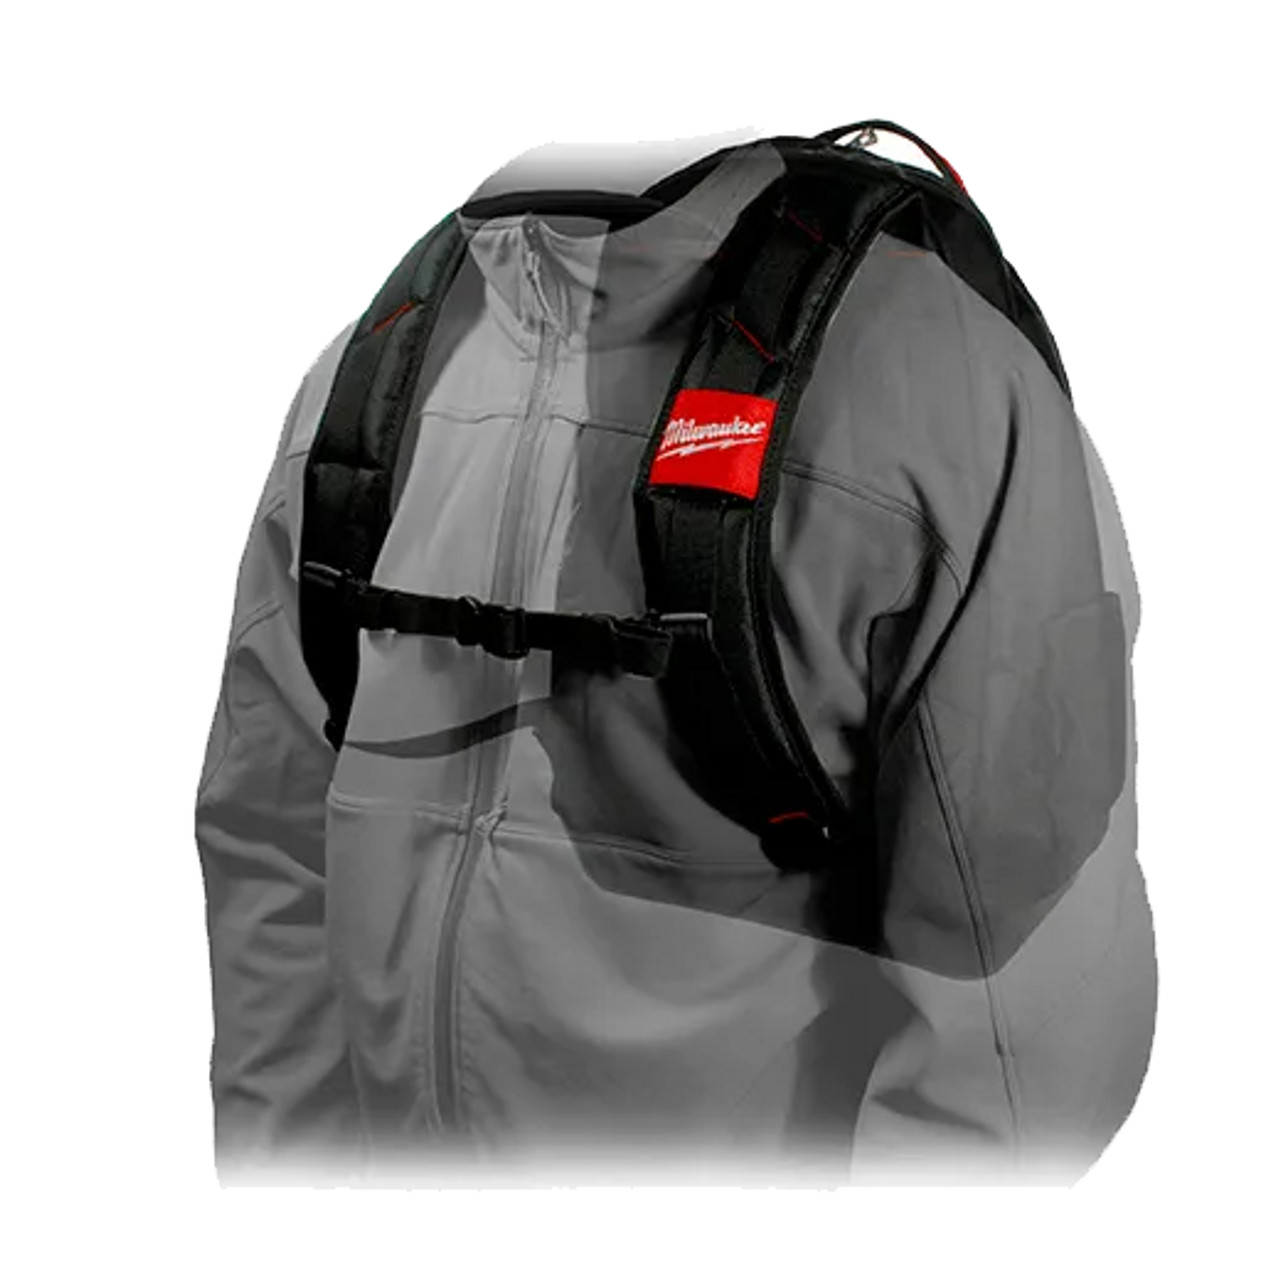 Jobsite Backpack